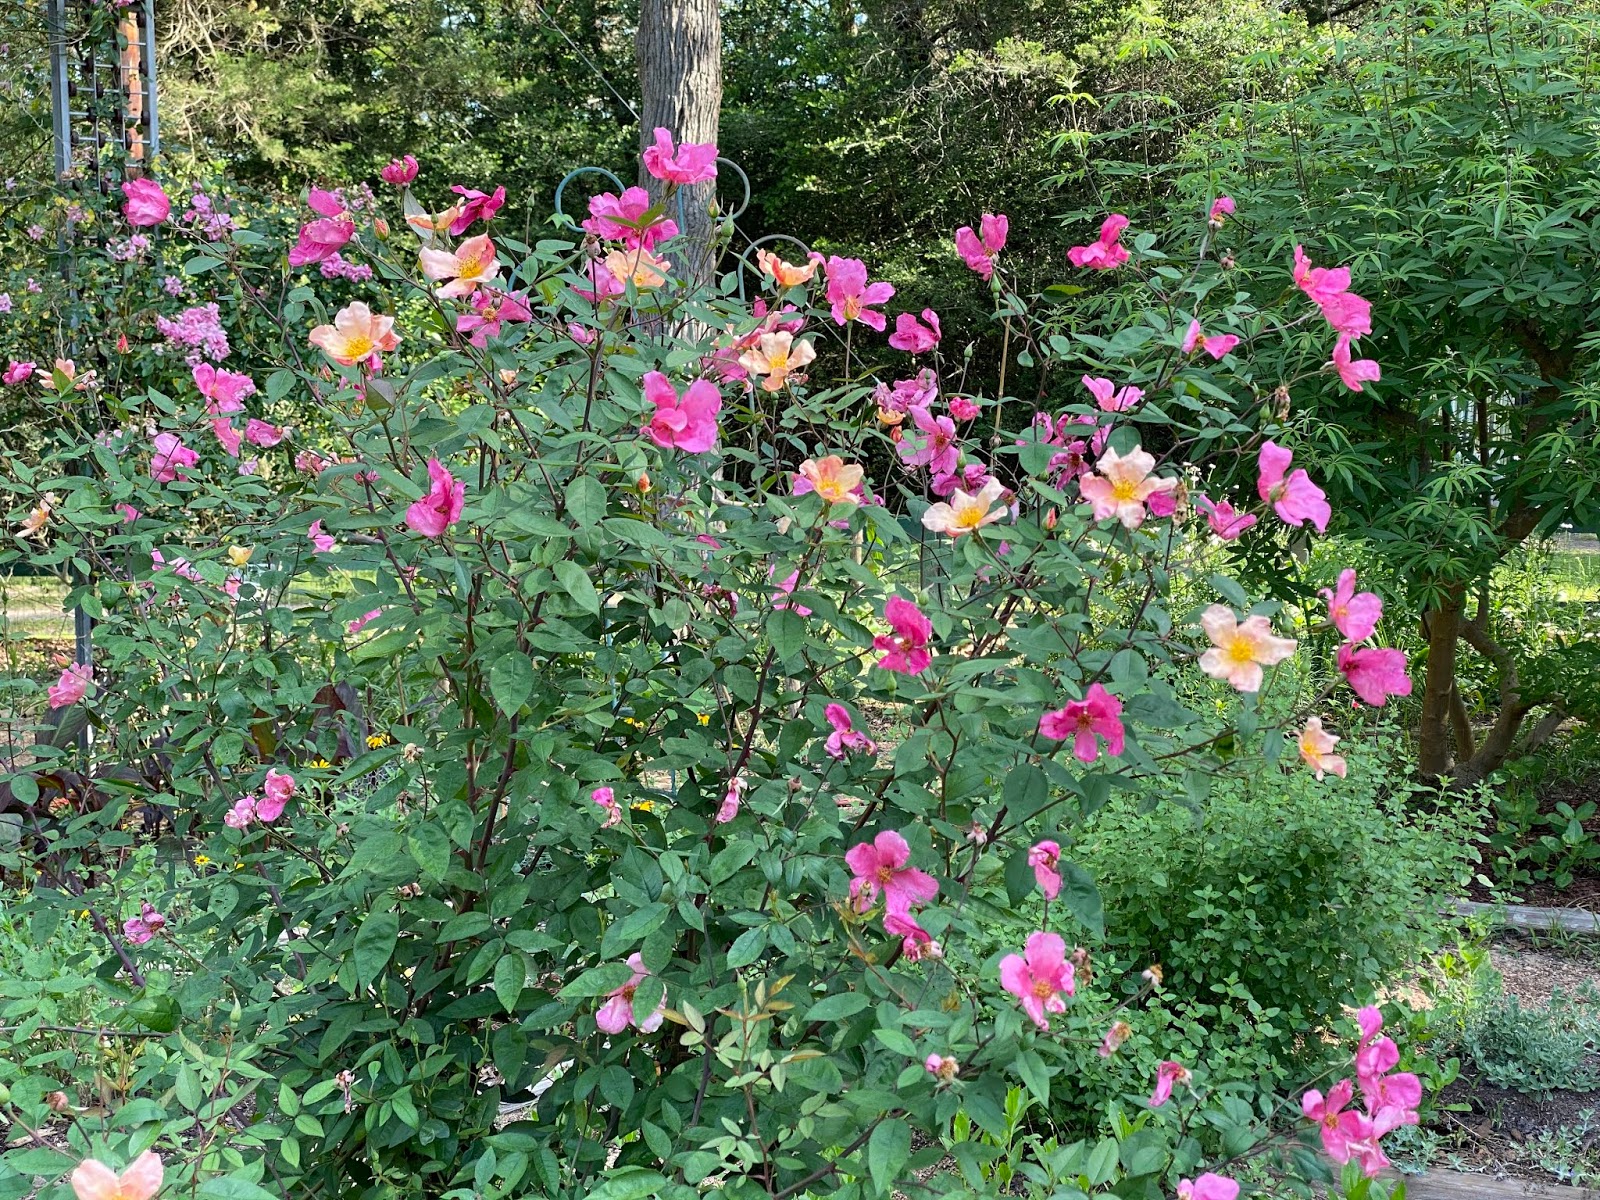 Lisa Bonassin's Garden: Butterfly Rose April 28, 2020